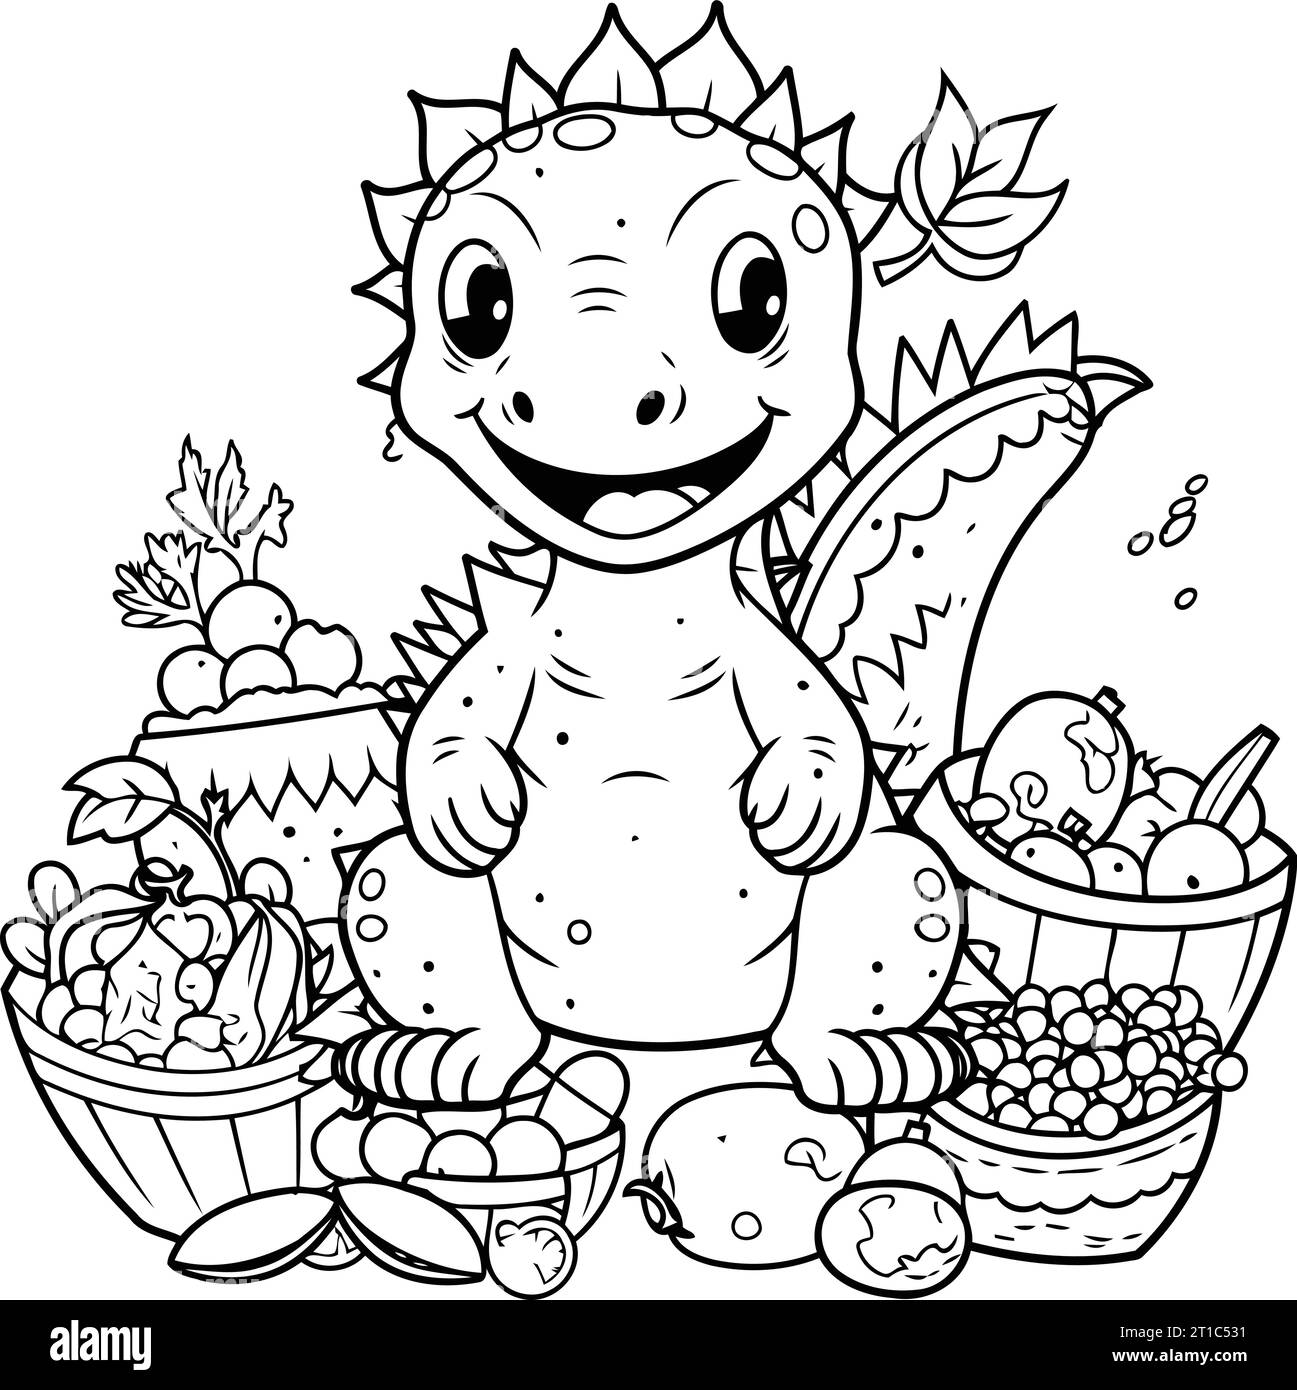 Livre de coloriage pour enfants. dinosaure avec un panier de fruits et légumes Illustration de Vecteur